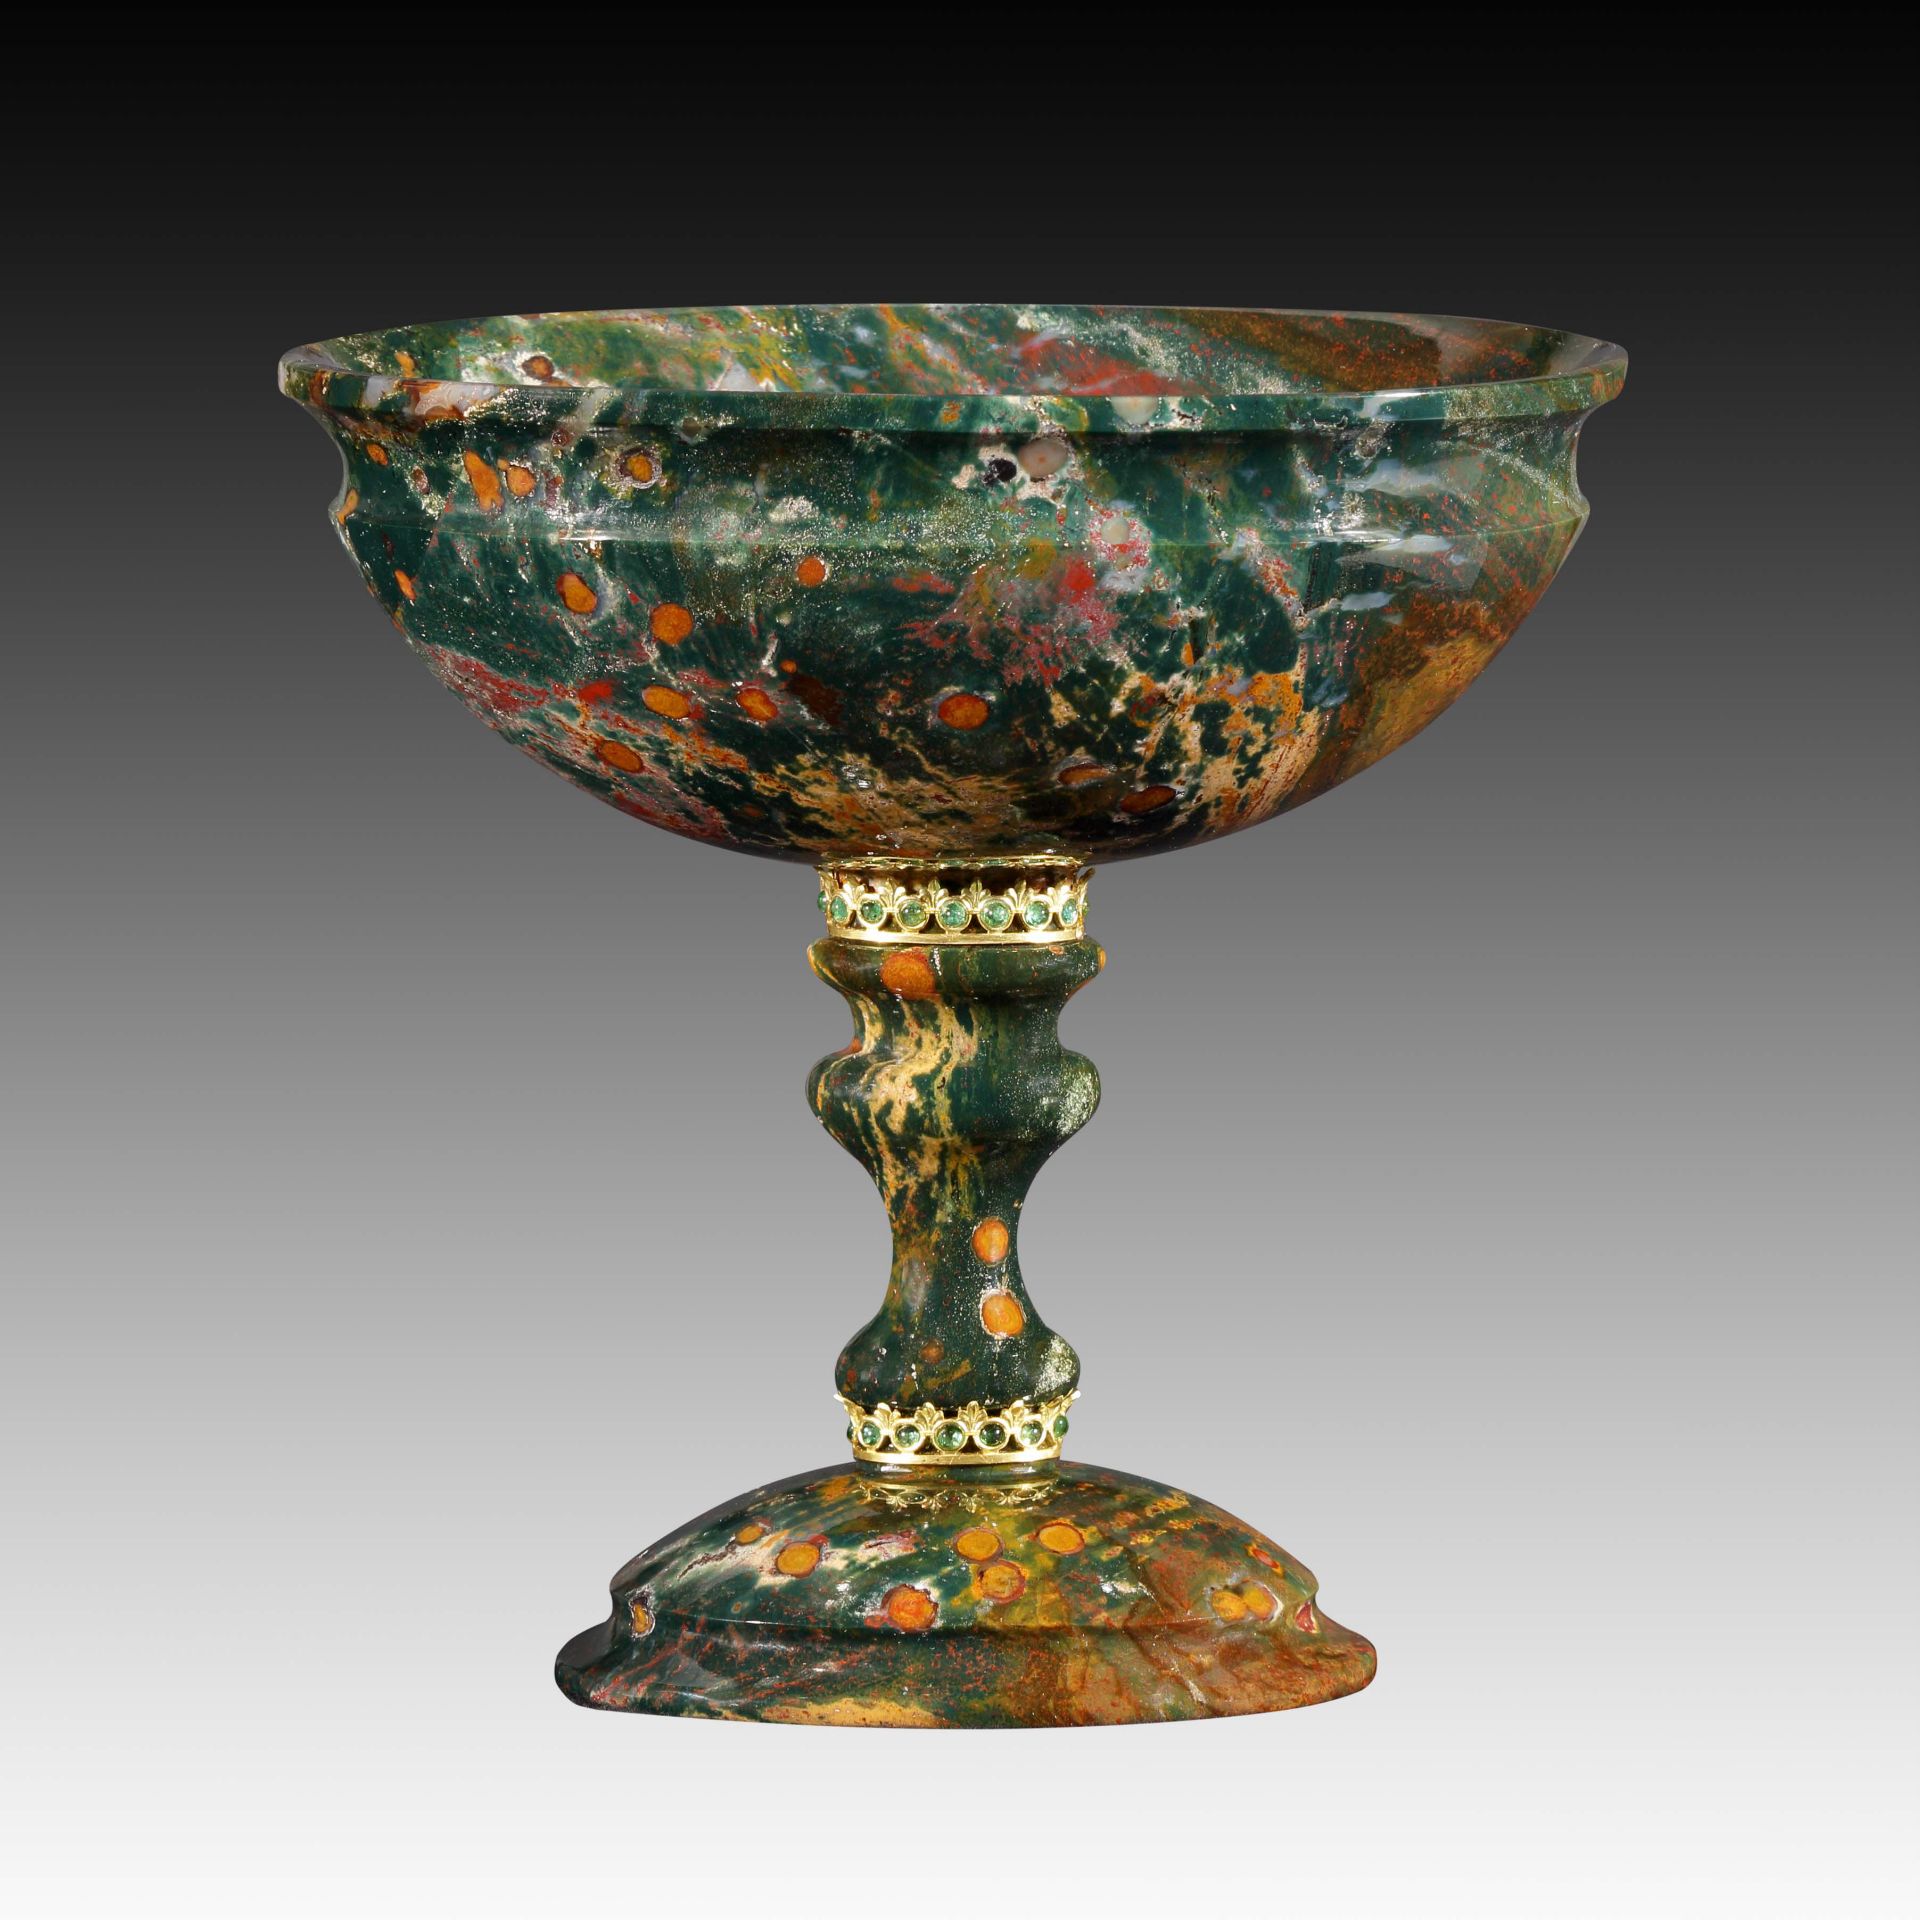 Ovaler Pokal aus grünem Jaspis - Kreation von Manfred Wild